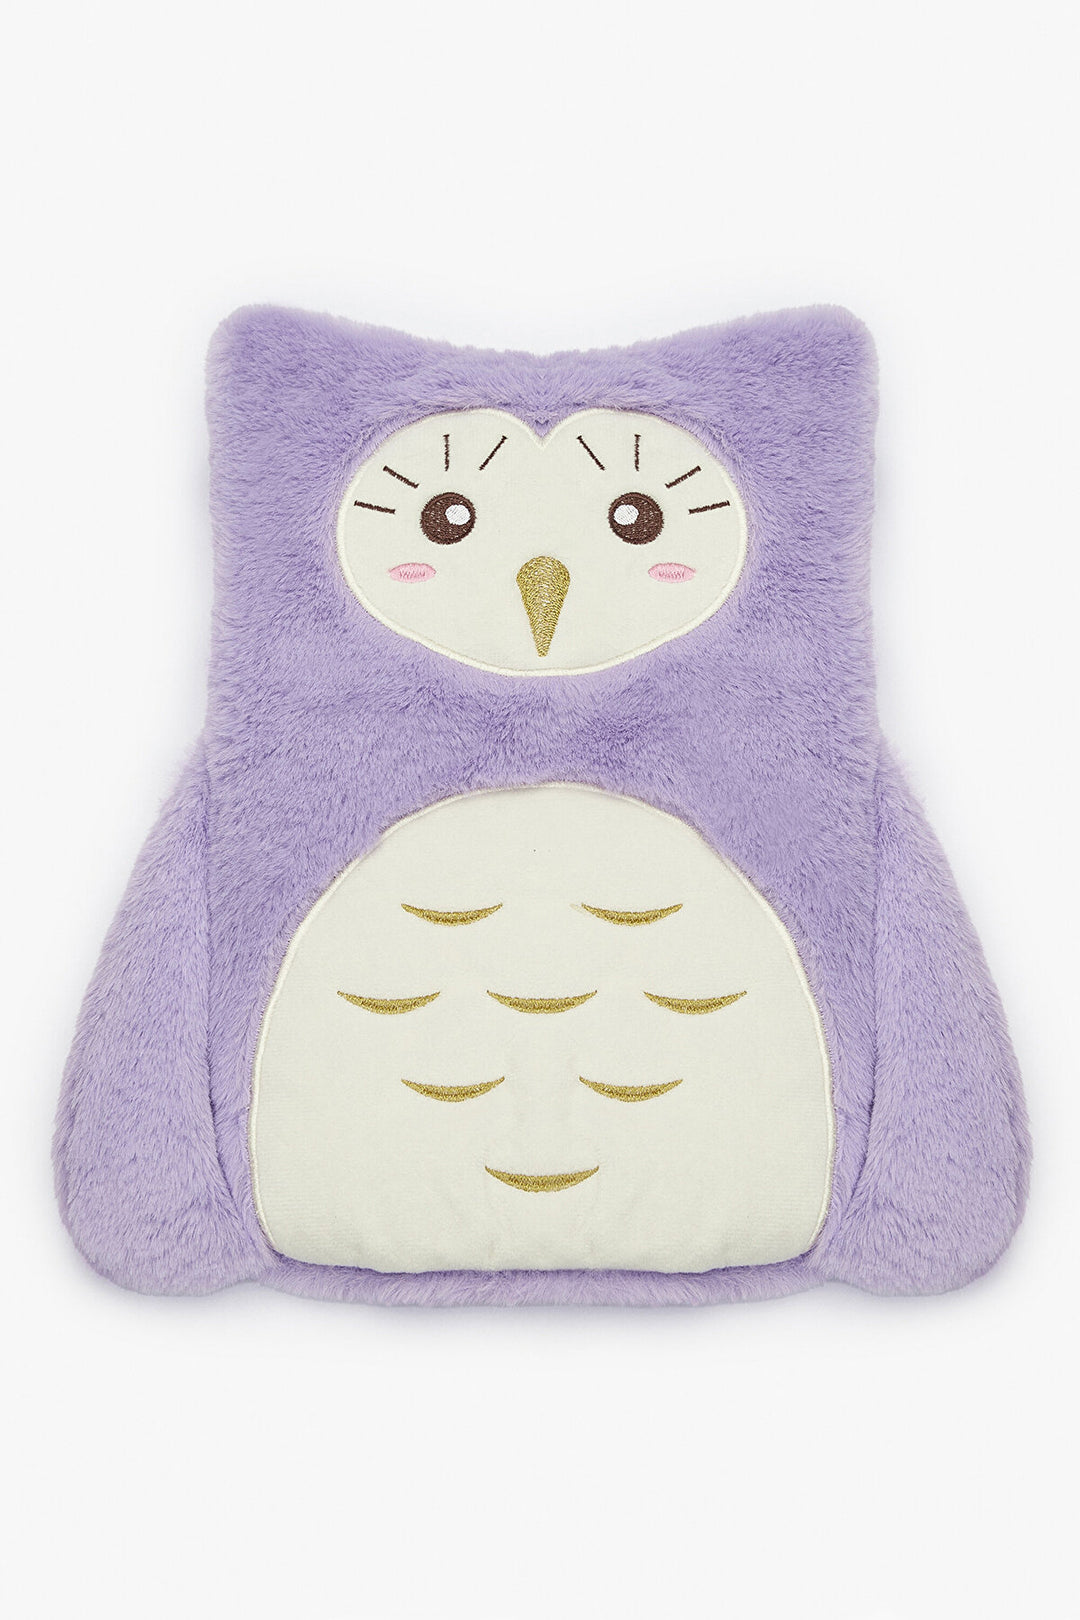 Owl Hot Water Bag